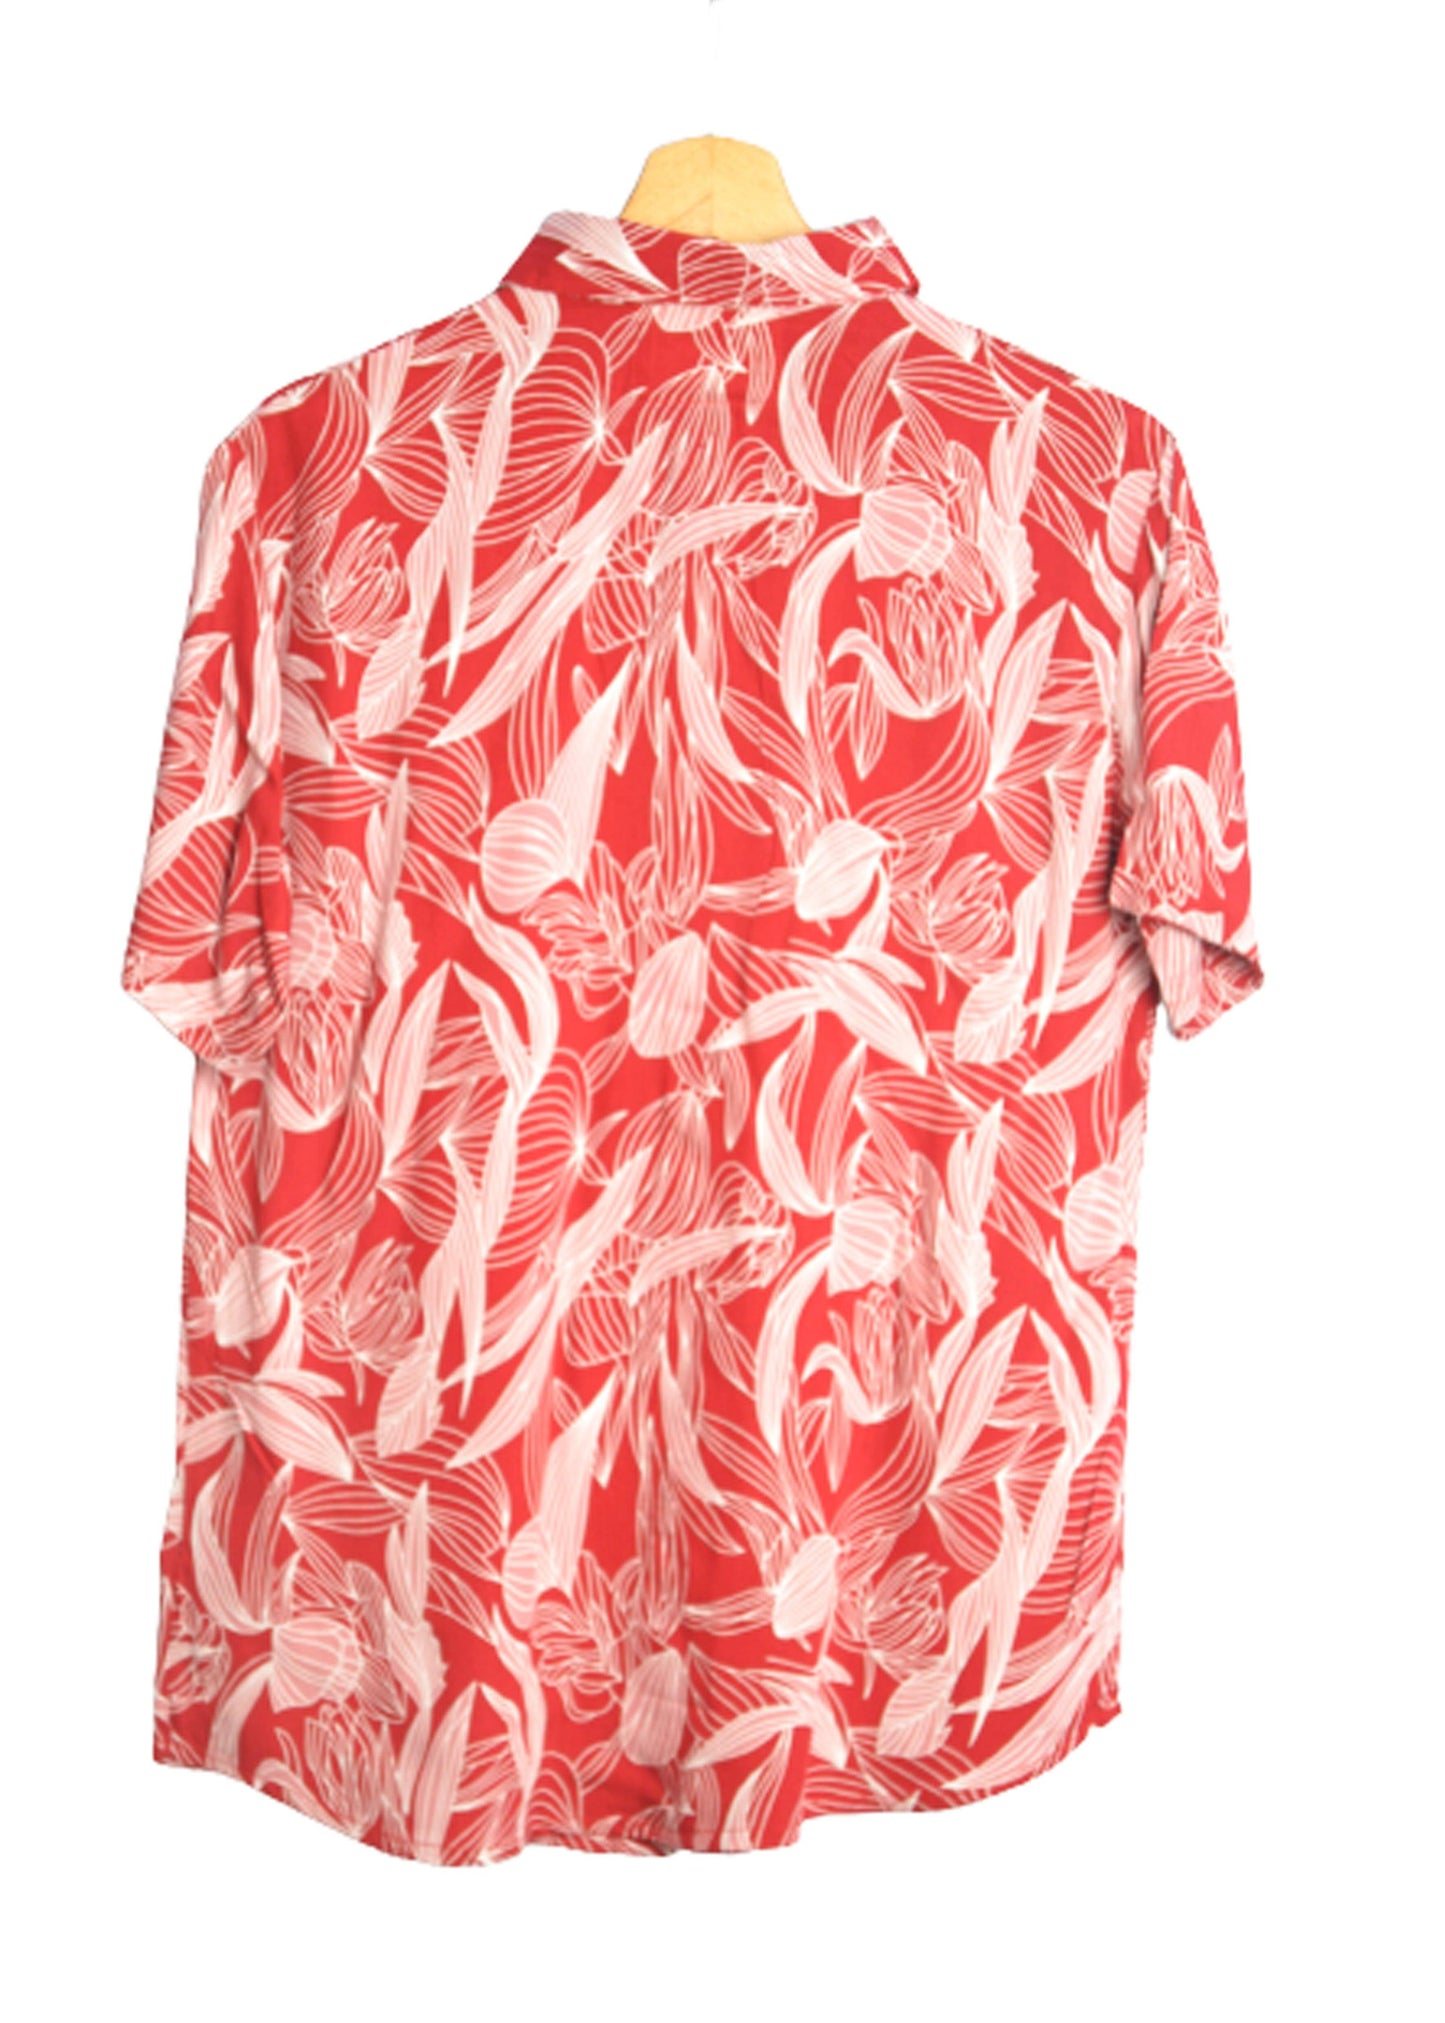 Vue dos chemise hawaienne rouge avec motifs floraux abstrait - GL BOUTIK